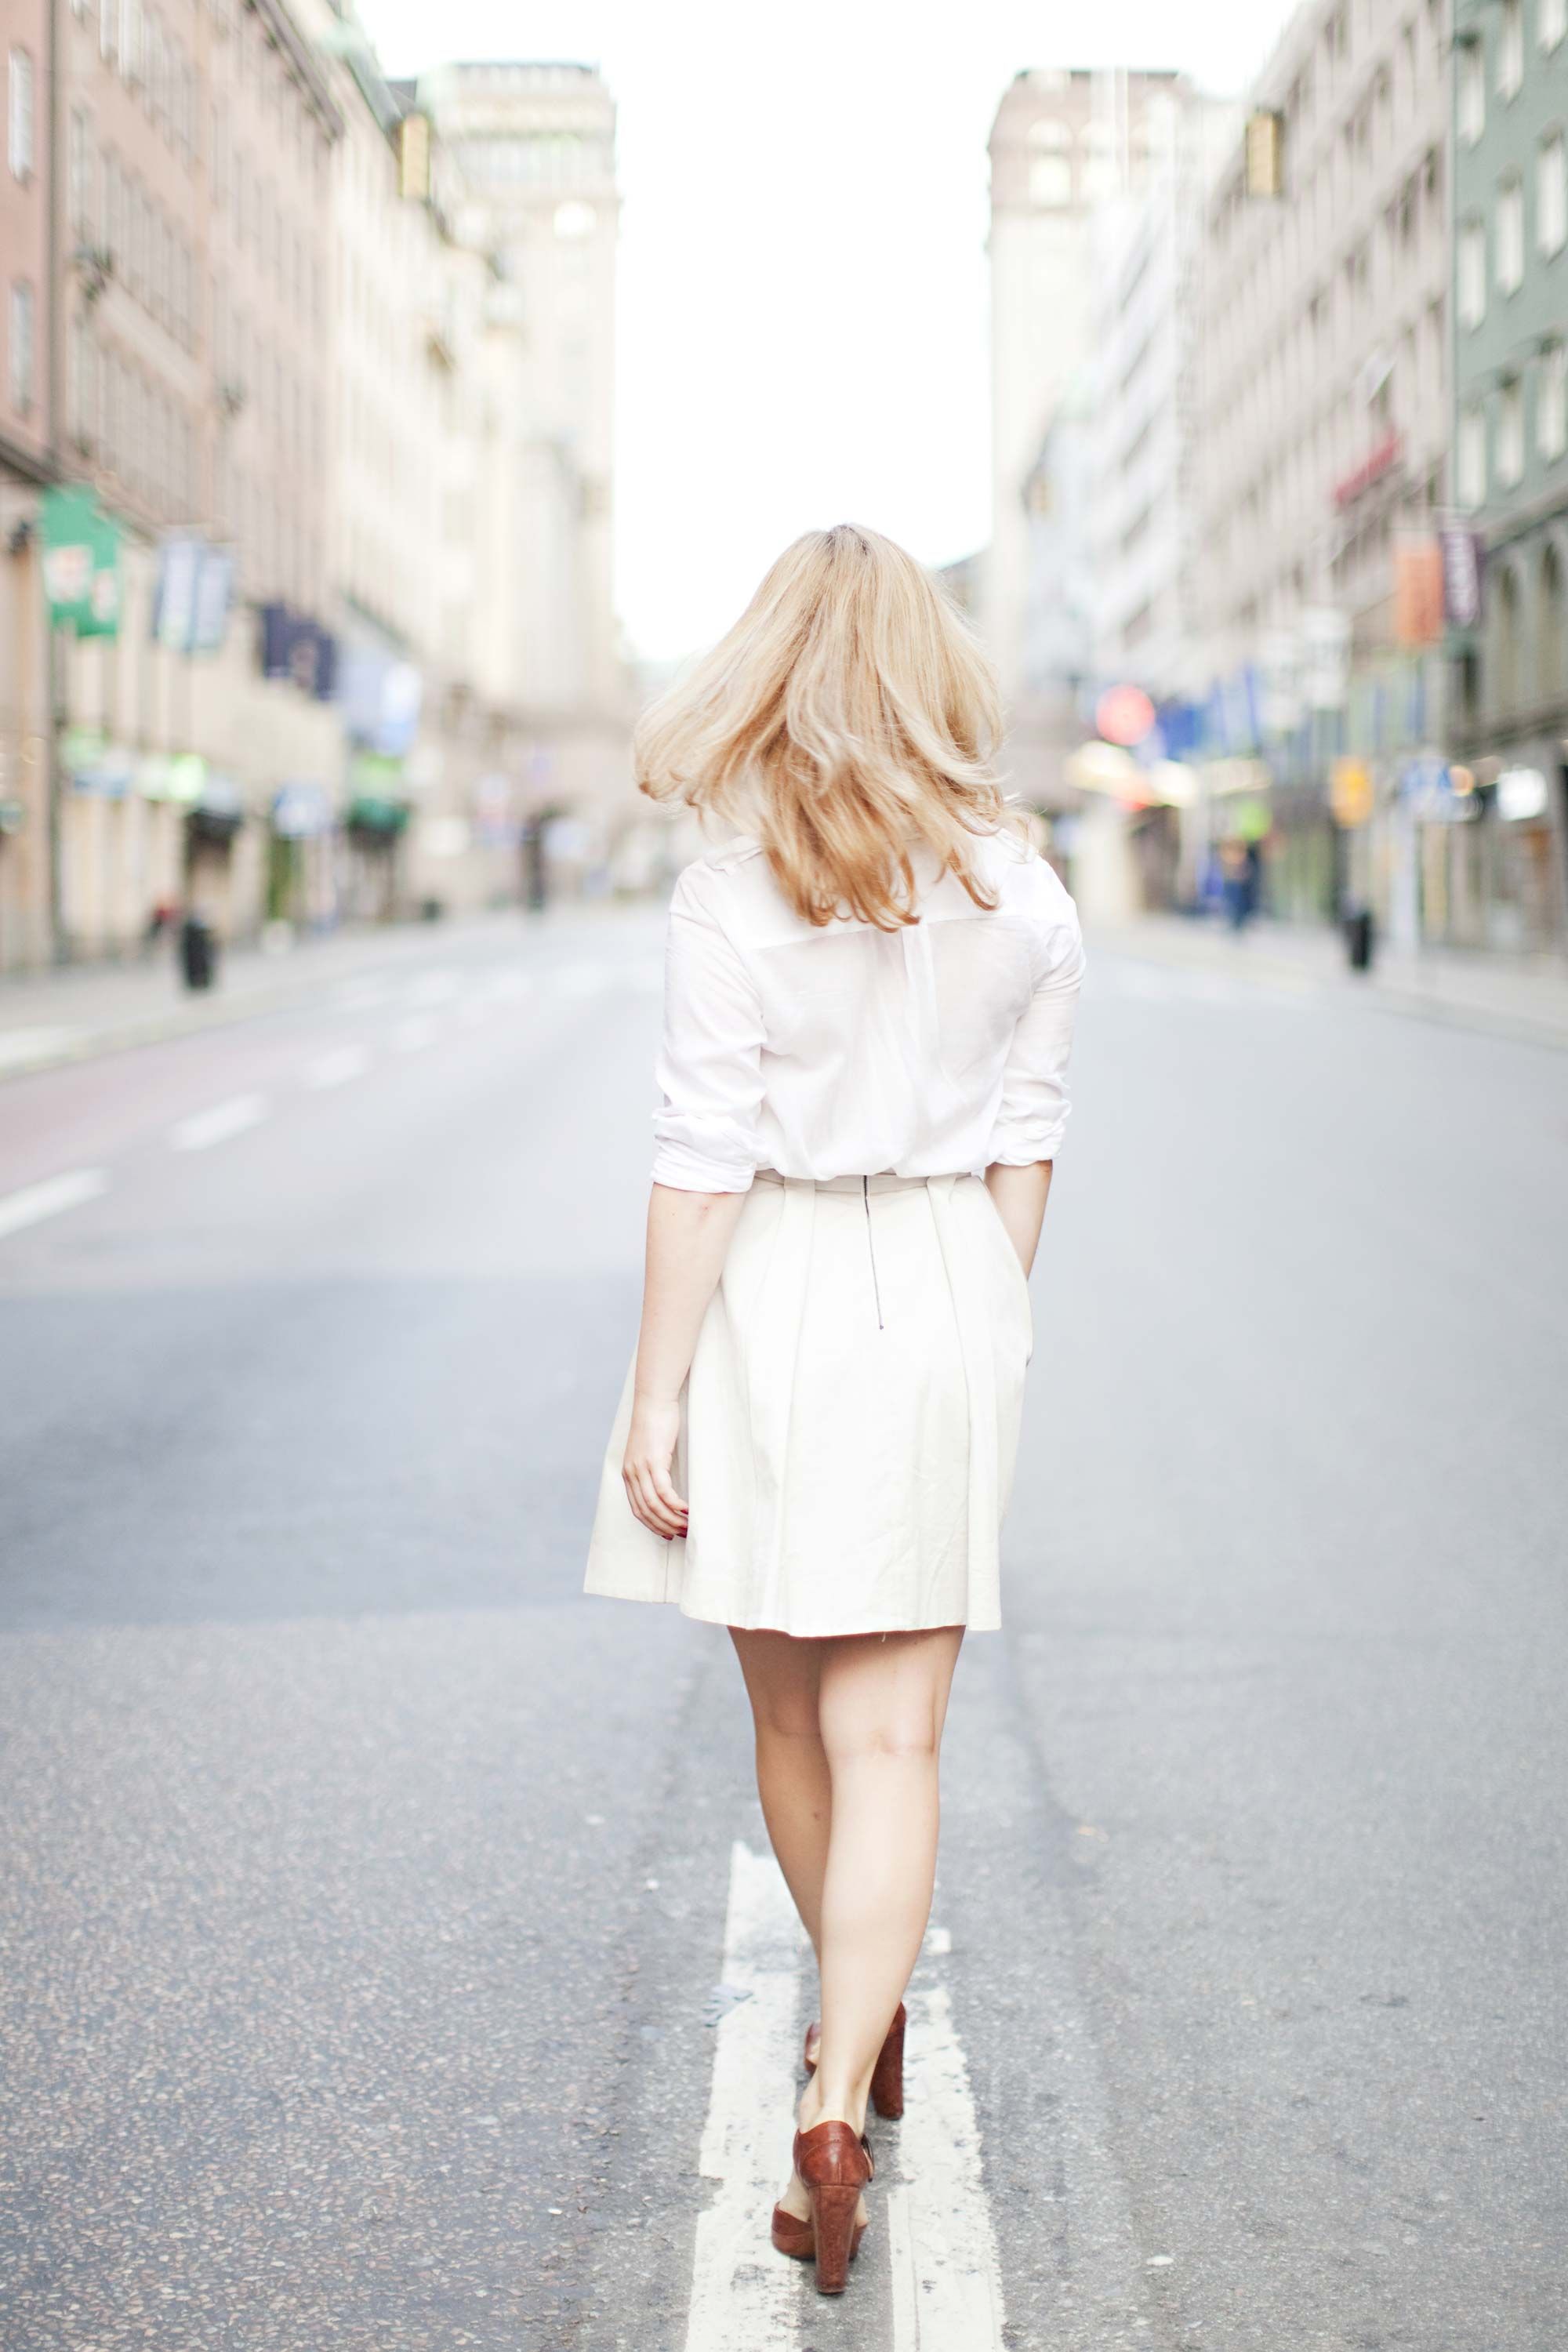 Girl in white skirt walks with her lucky boyfriend